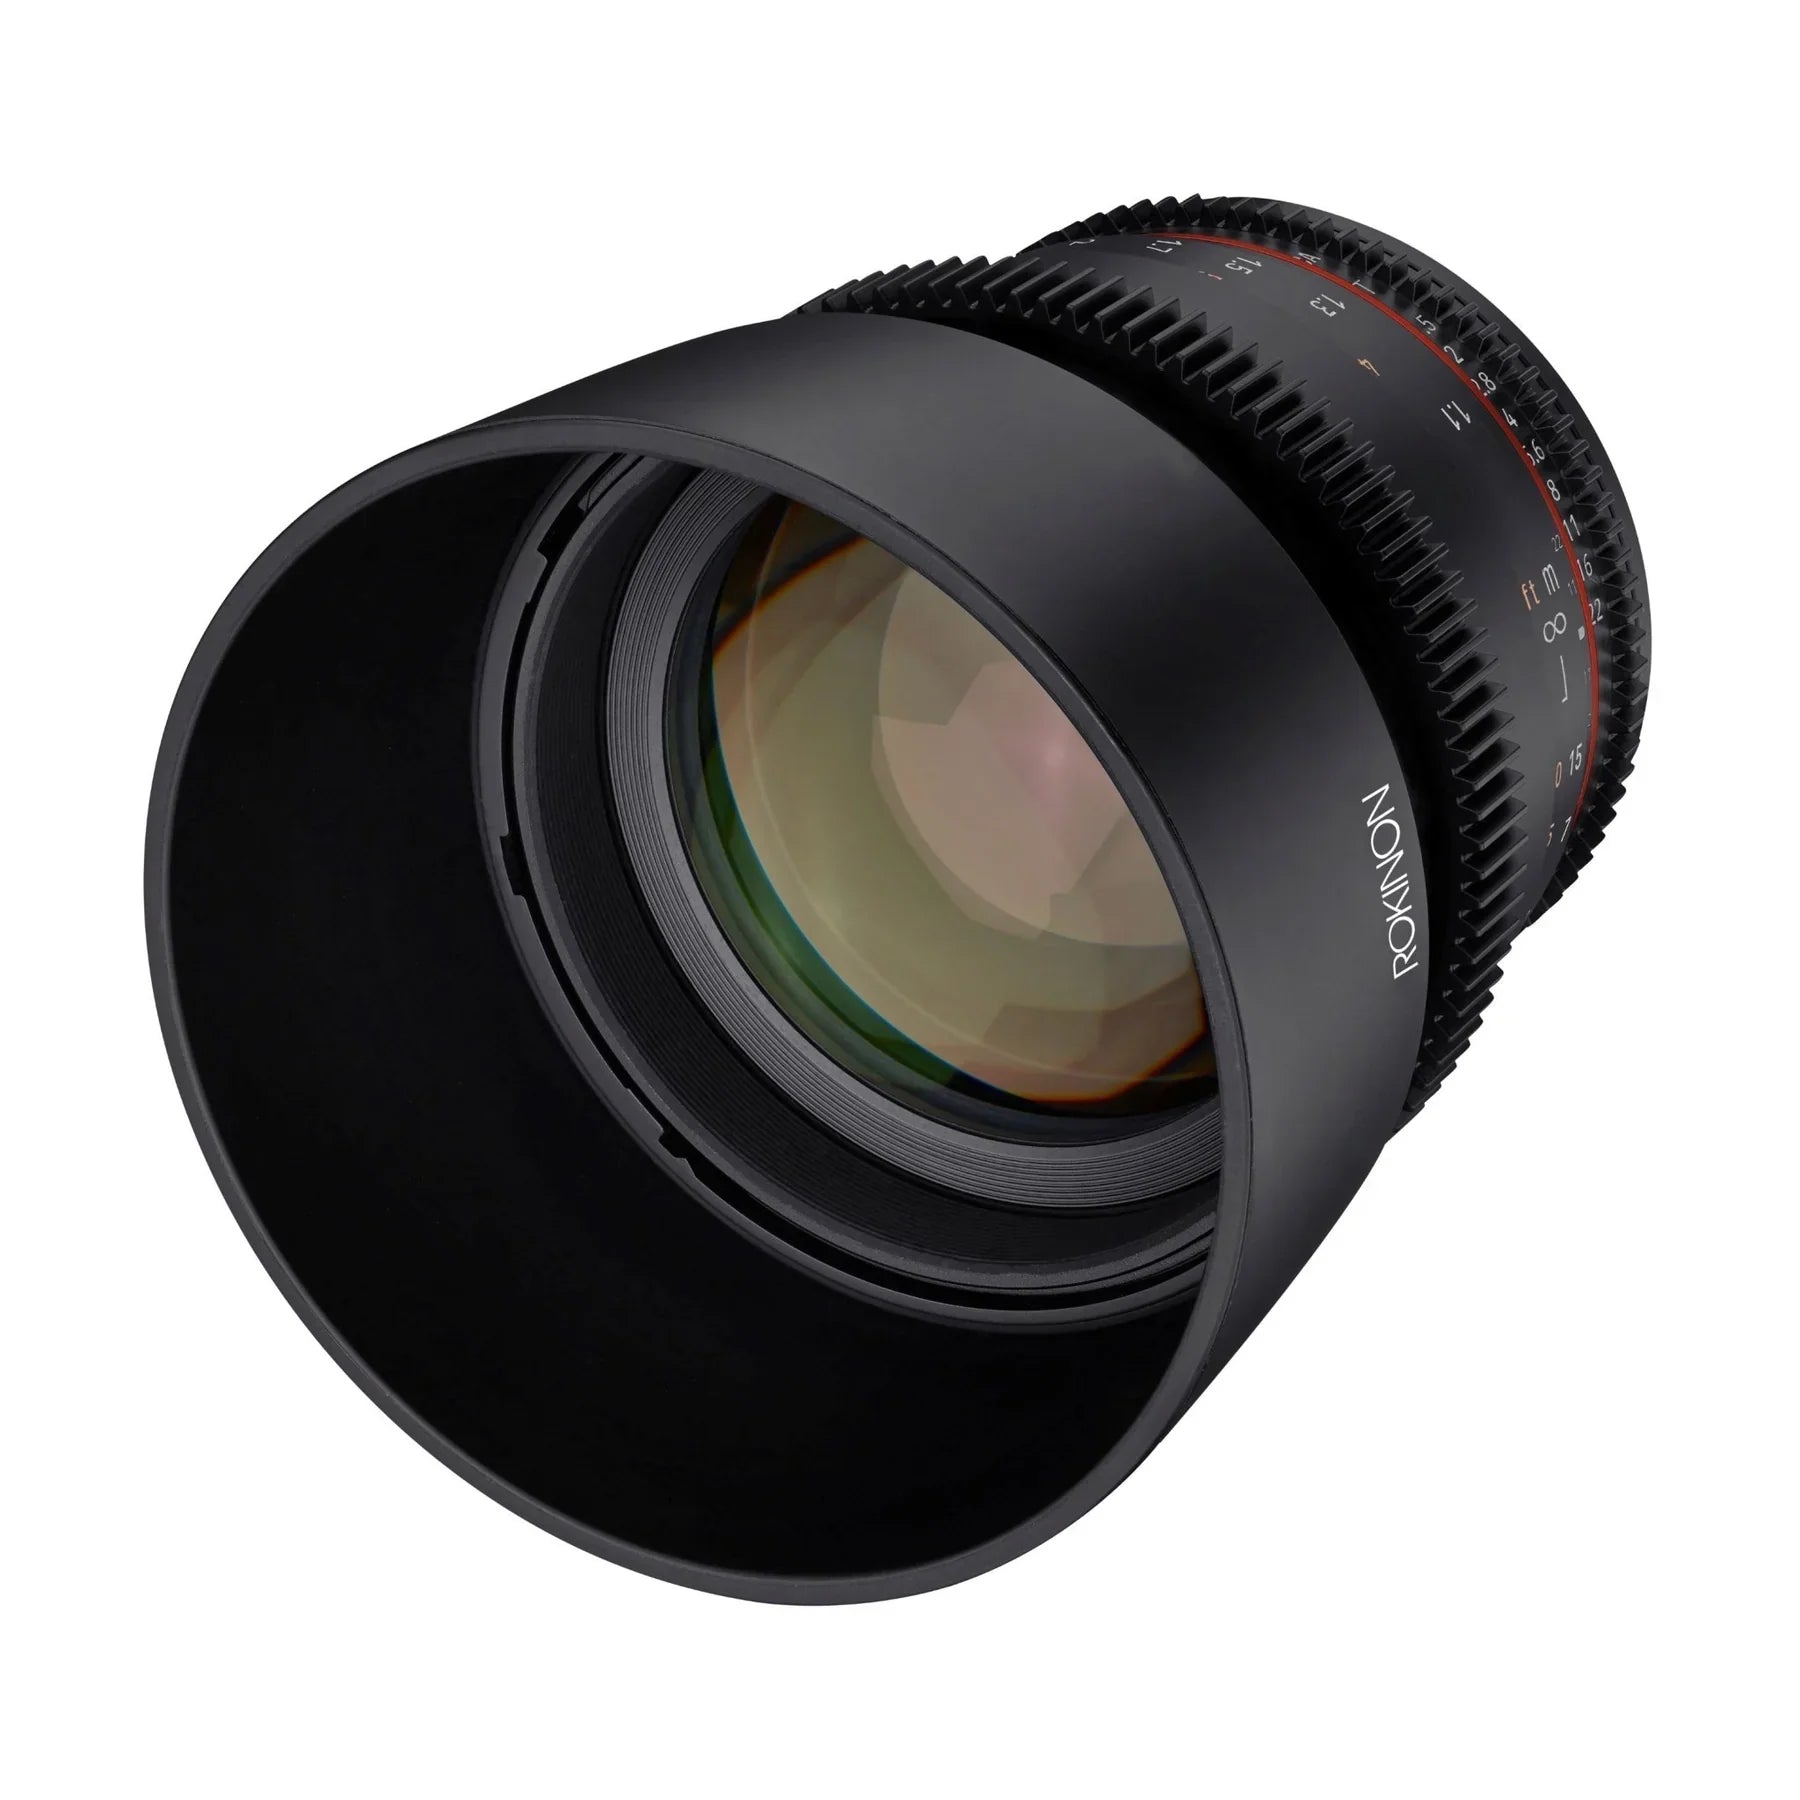 Rokinon 85mm T1.5 Full Frame Telephoto Cine DSX Lens | Filter Size 72mm - Sony E Lens Mount Camera tek